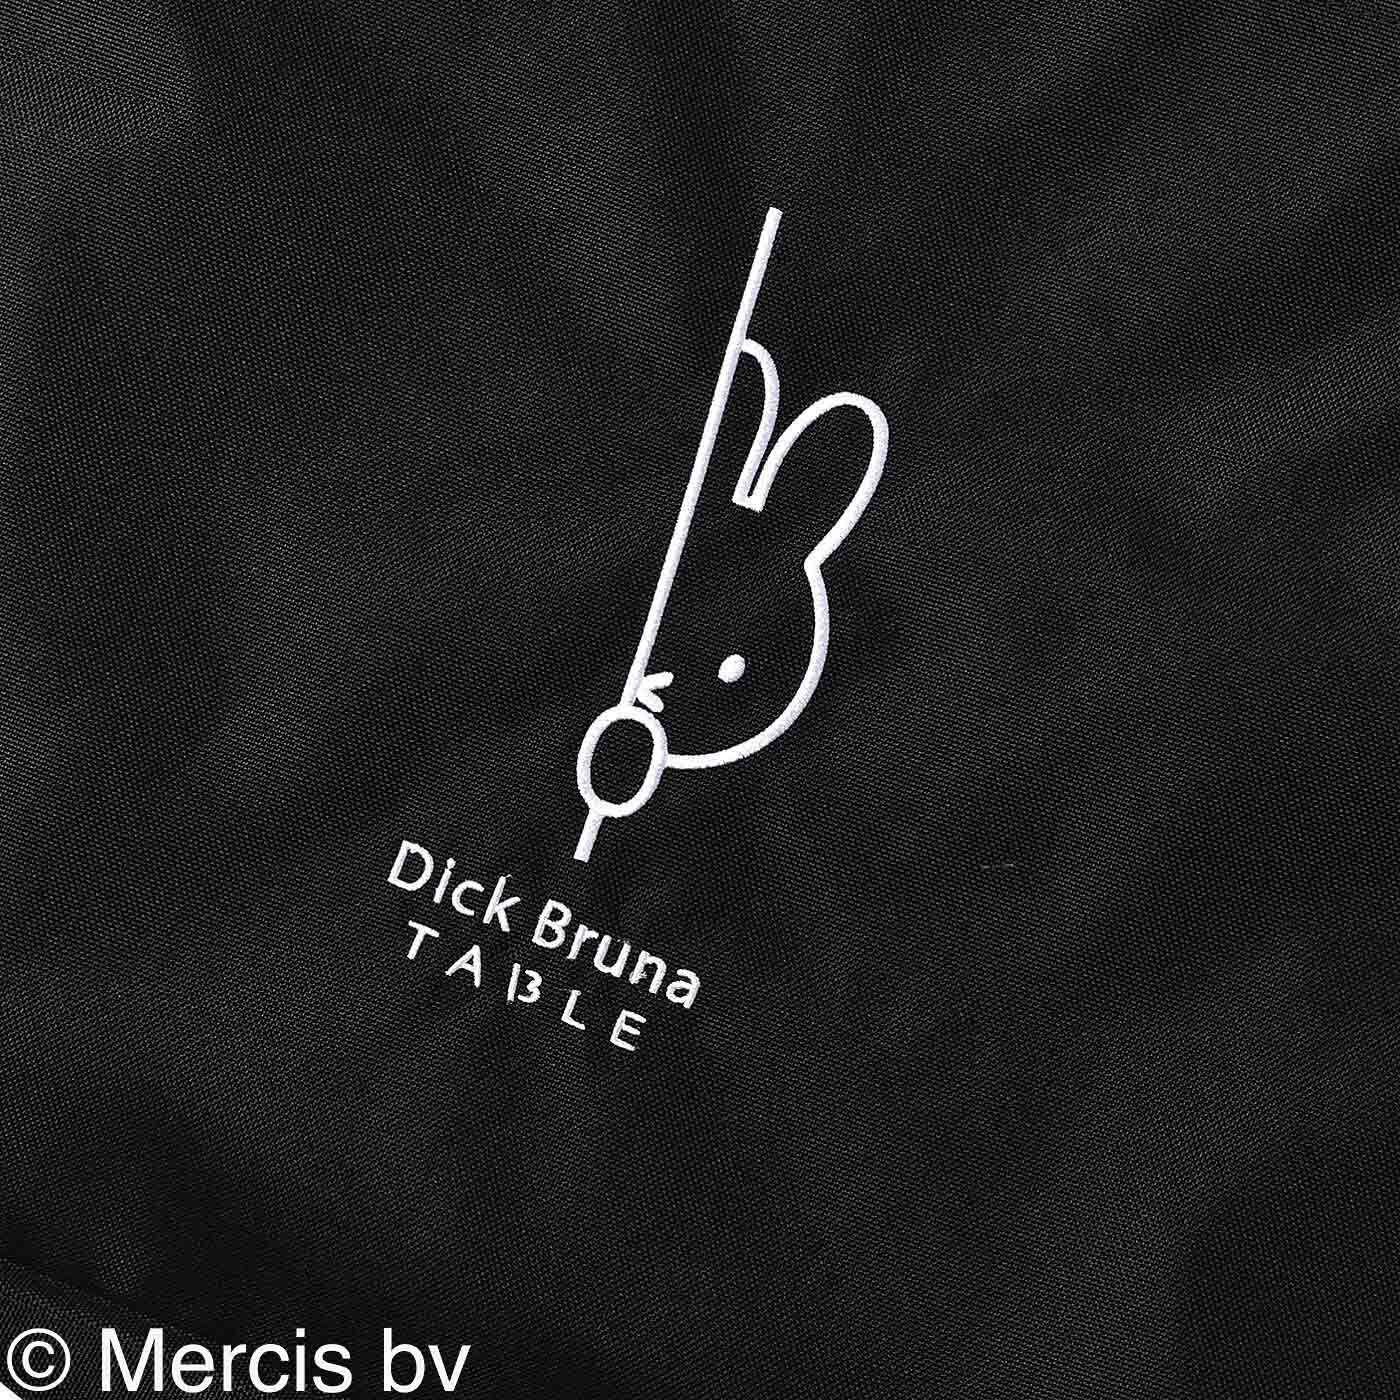 ディック・ブルーナ テーブル|Dick Bruna TABLE  刺しゅうバッグ〈ブラック〉|正面に大きく、Dick Bruna TABLEのワンポイント刺しゅう入り